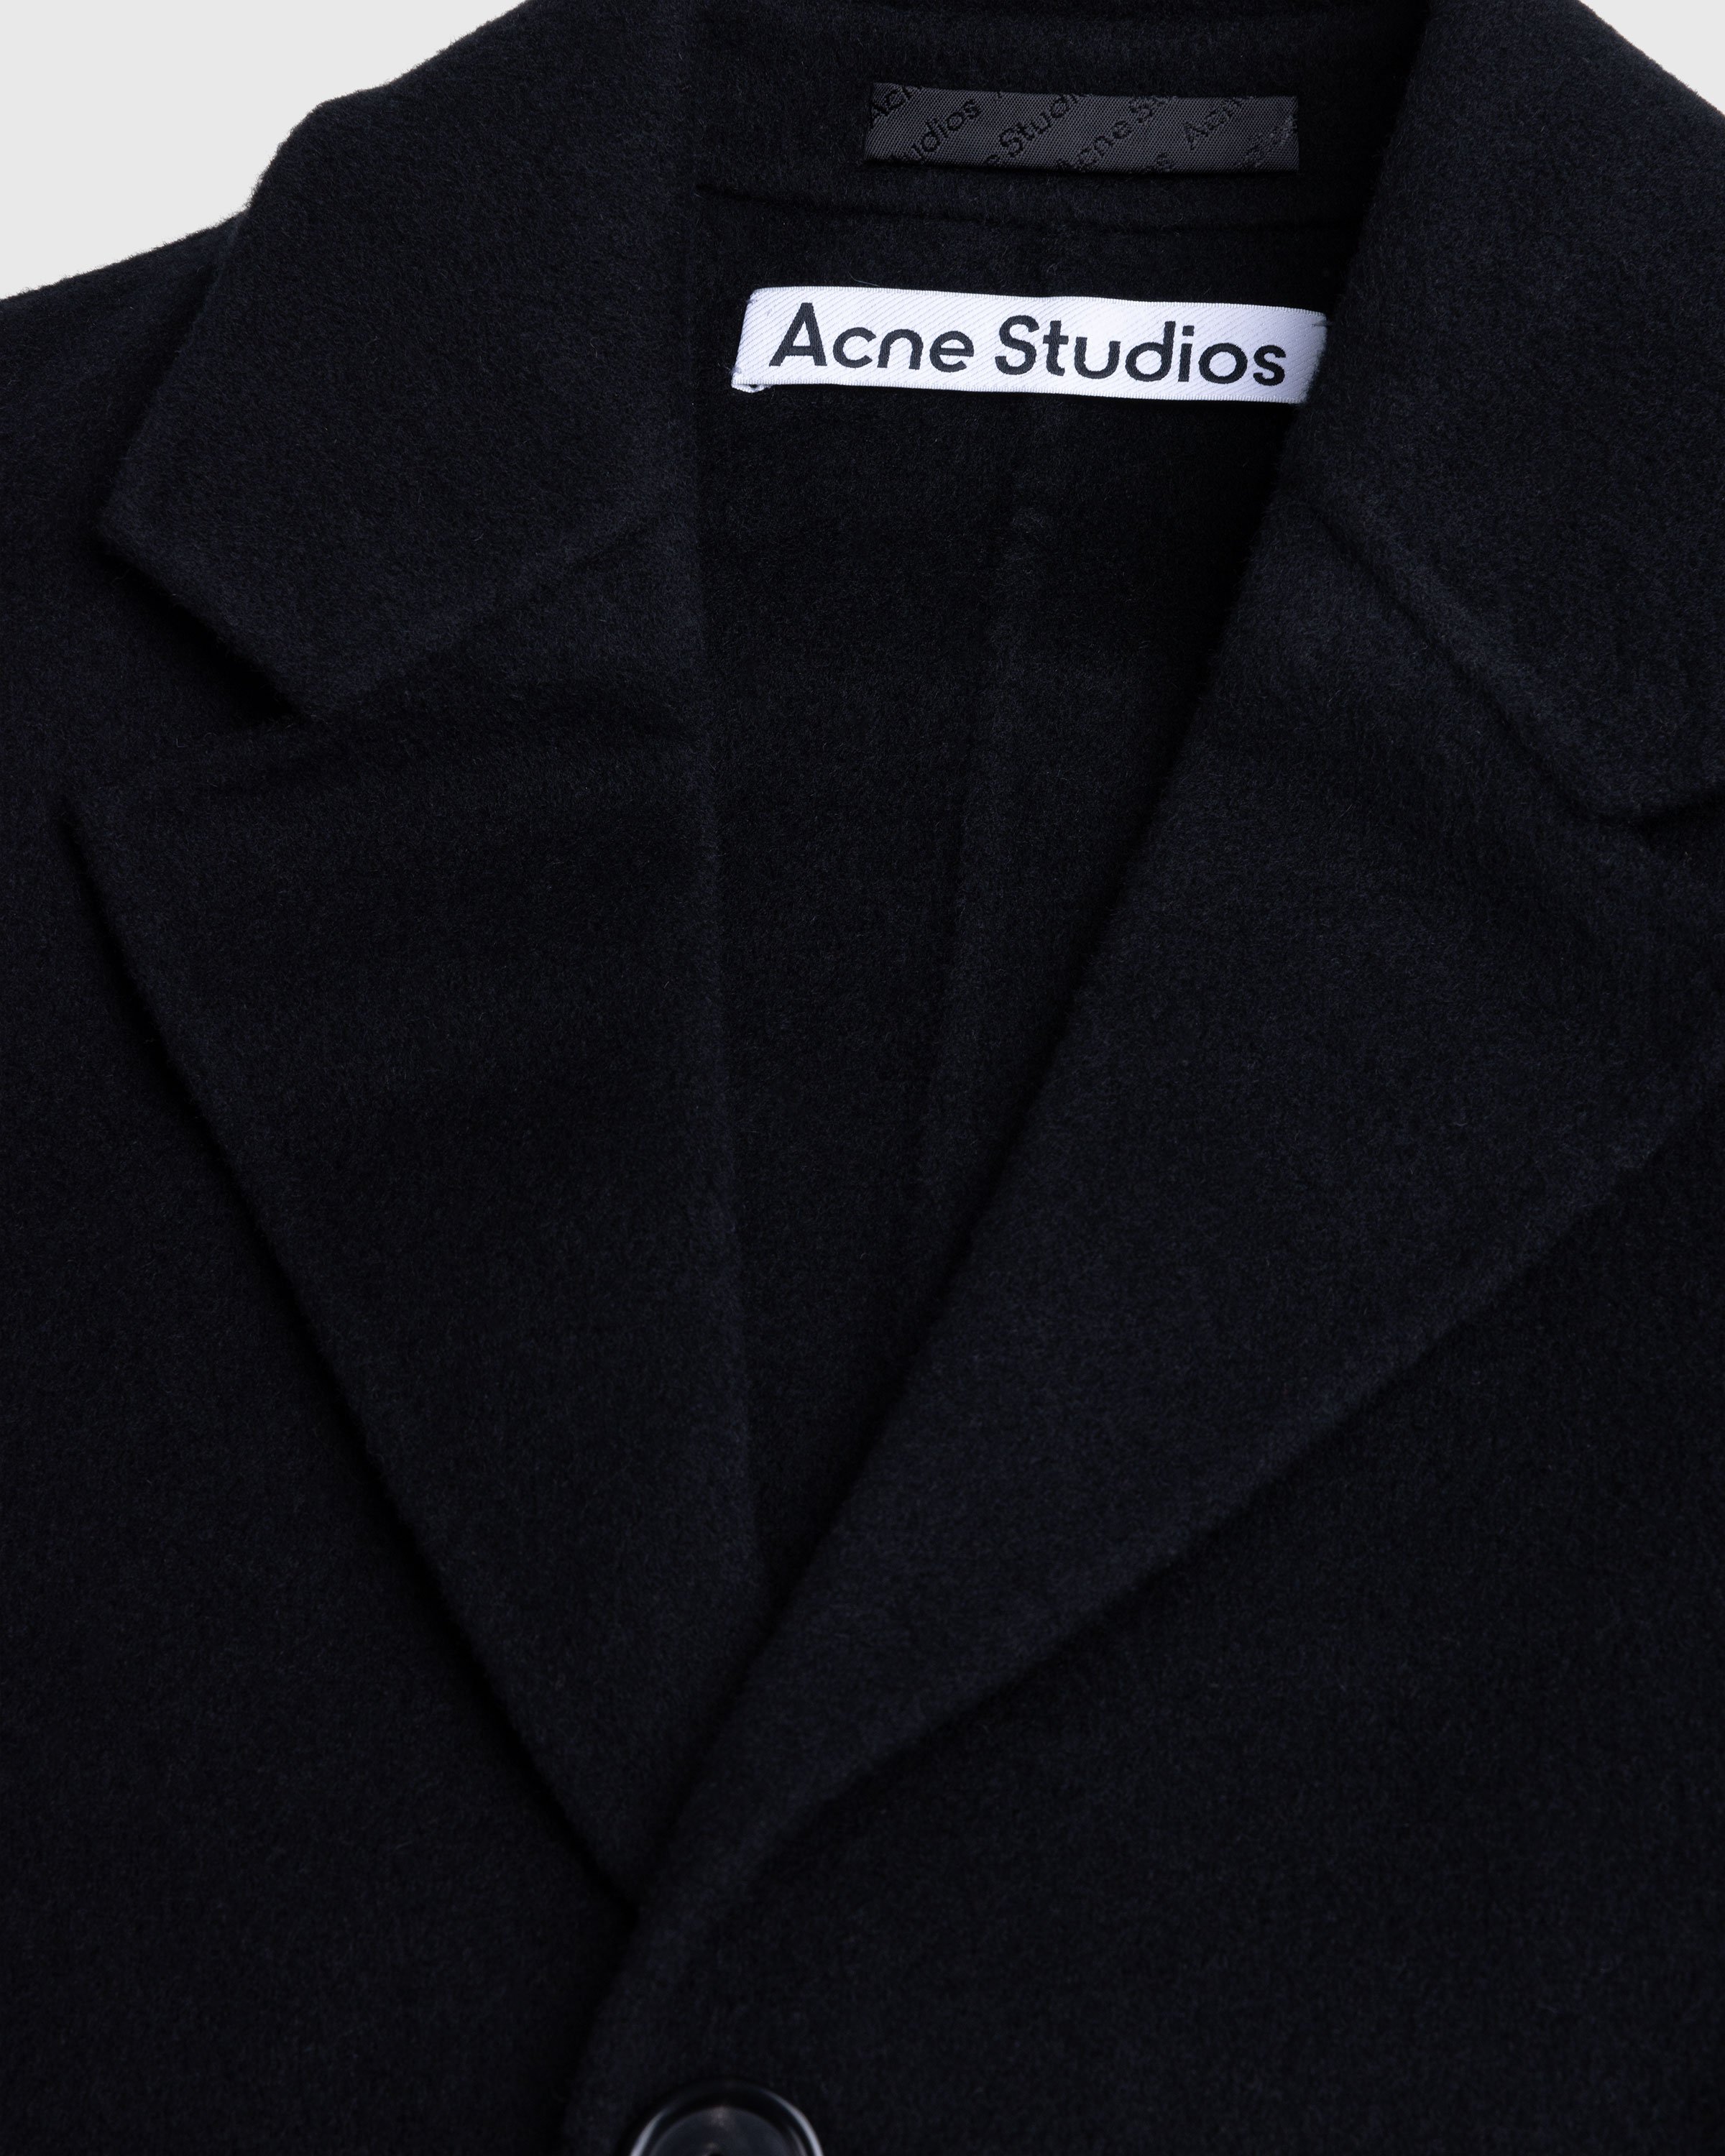 Acne Studios - Single-Breasted Coat Black - Clothing - Black - Image 6